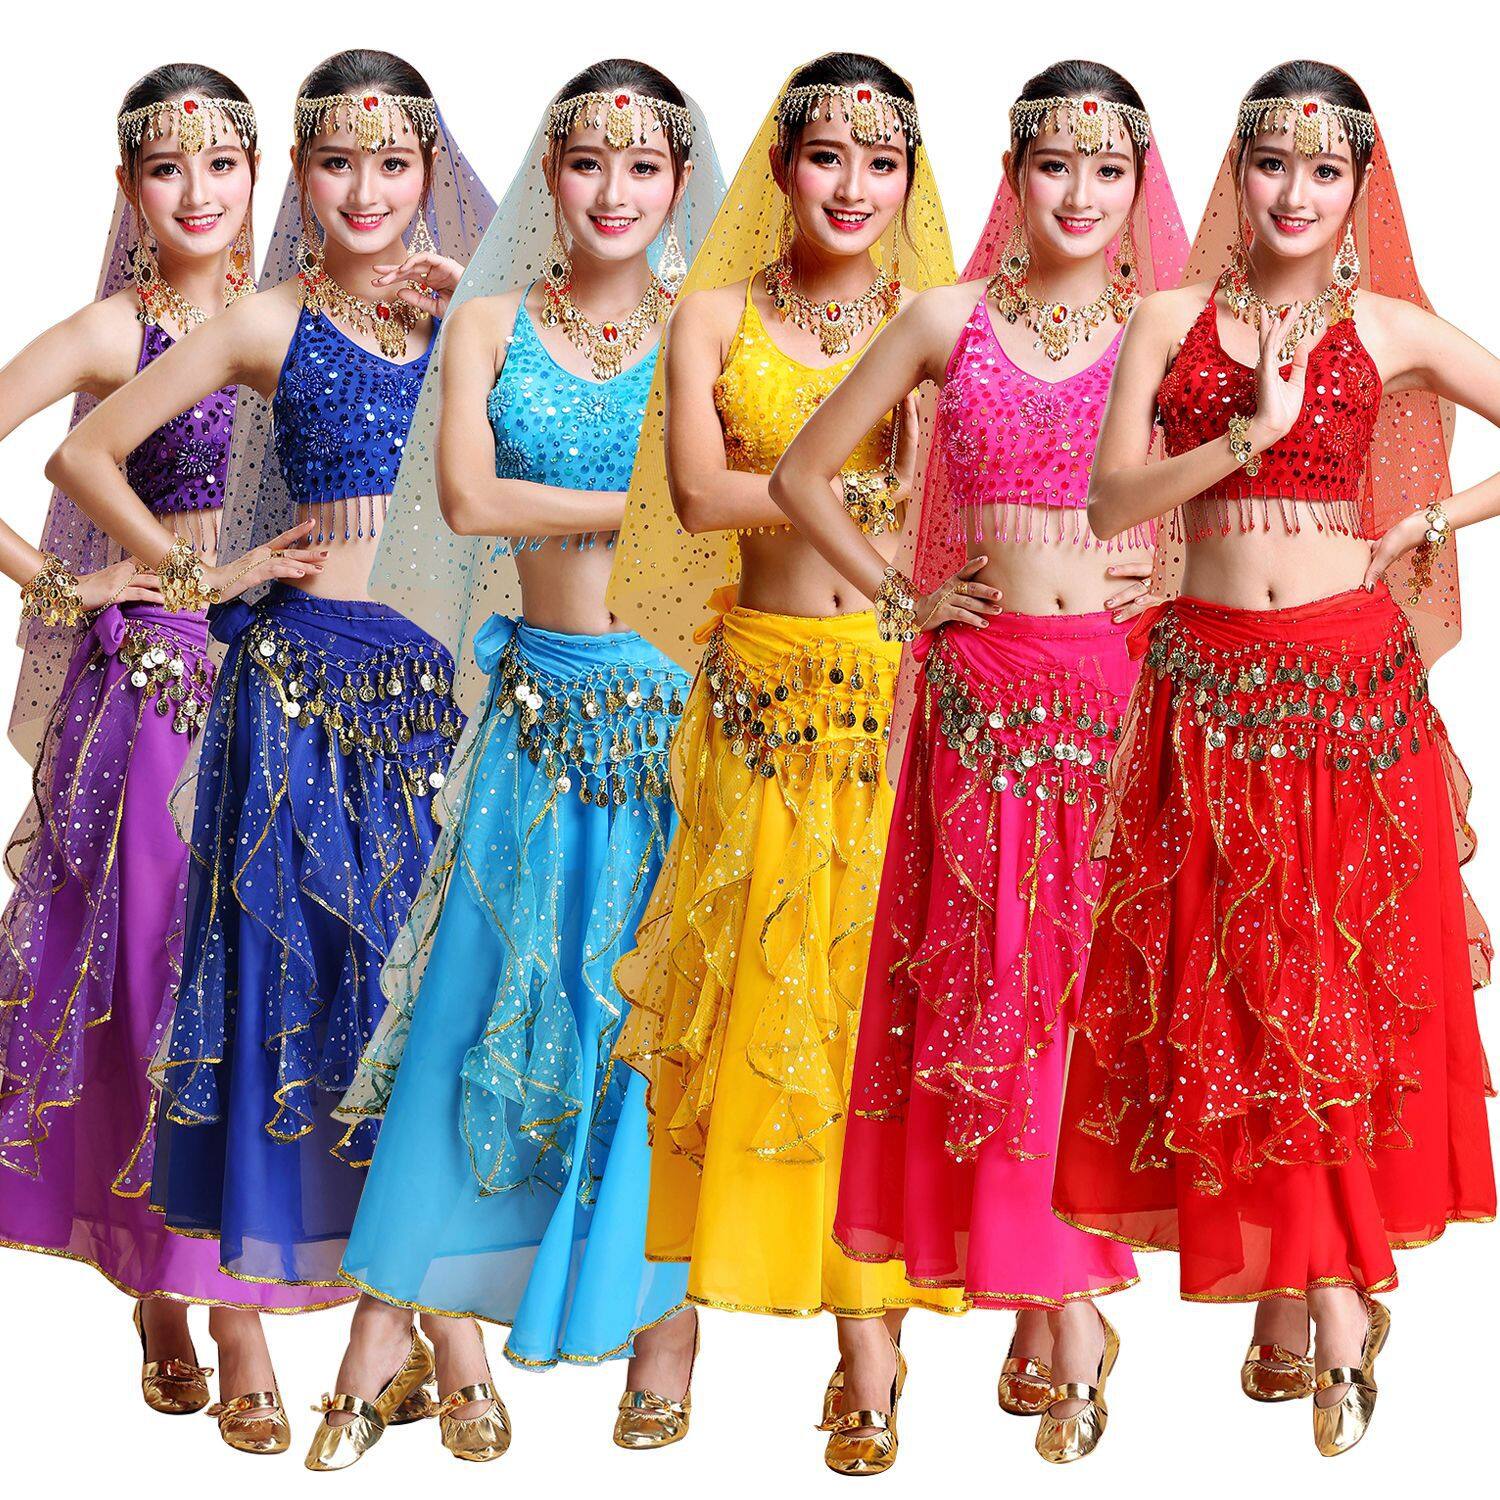 5 Cửa hàng cho thuê trang phục biểu diễn đẹp nhất tỉnh Bình Dương   TOKYOMETRO